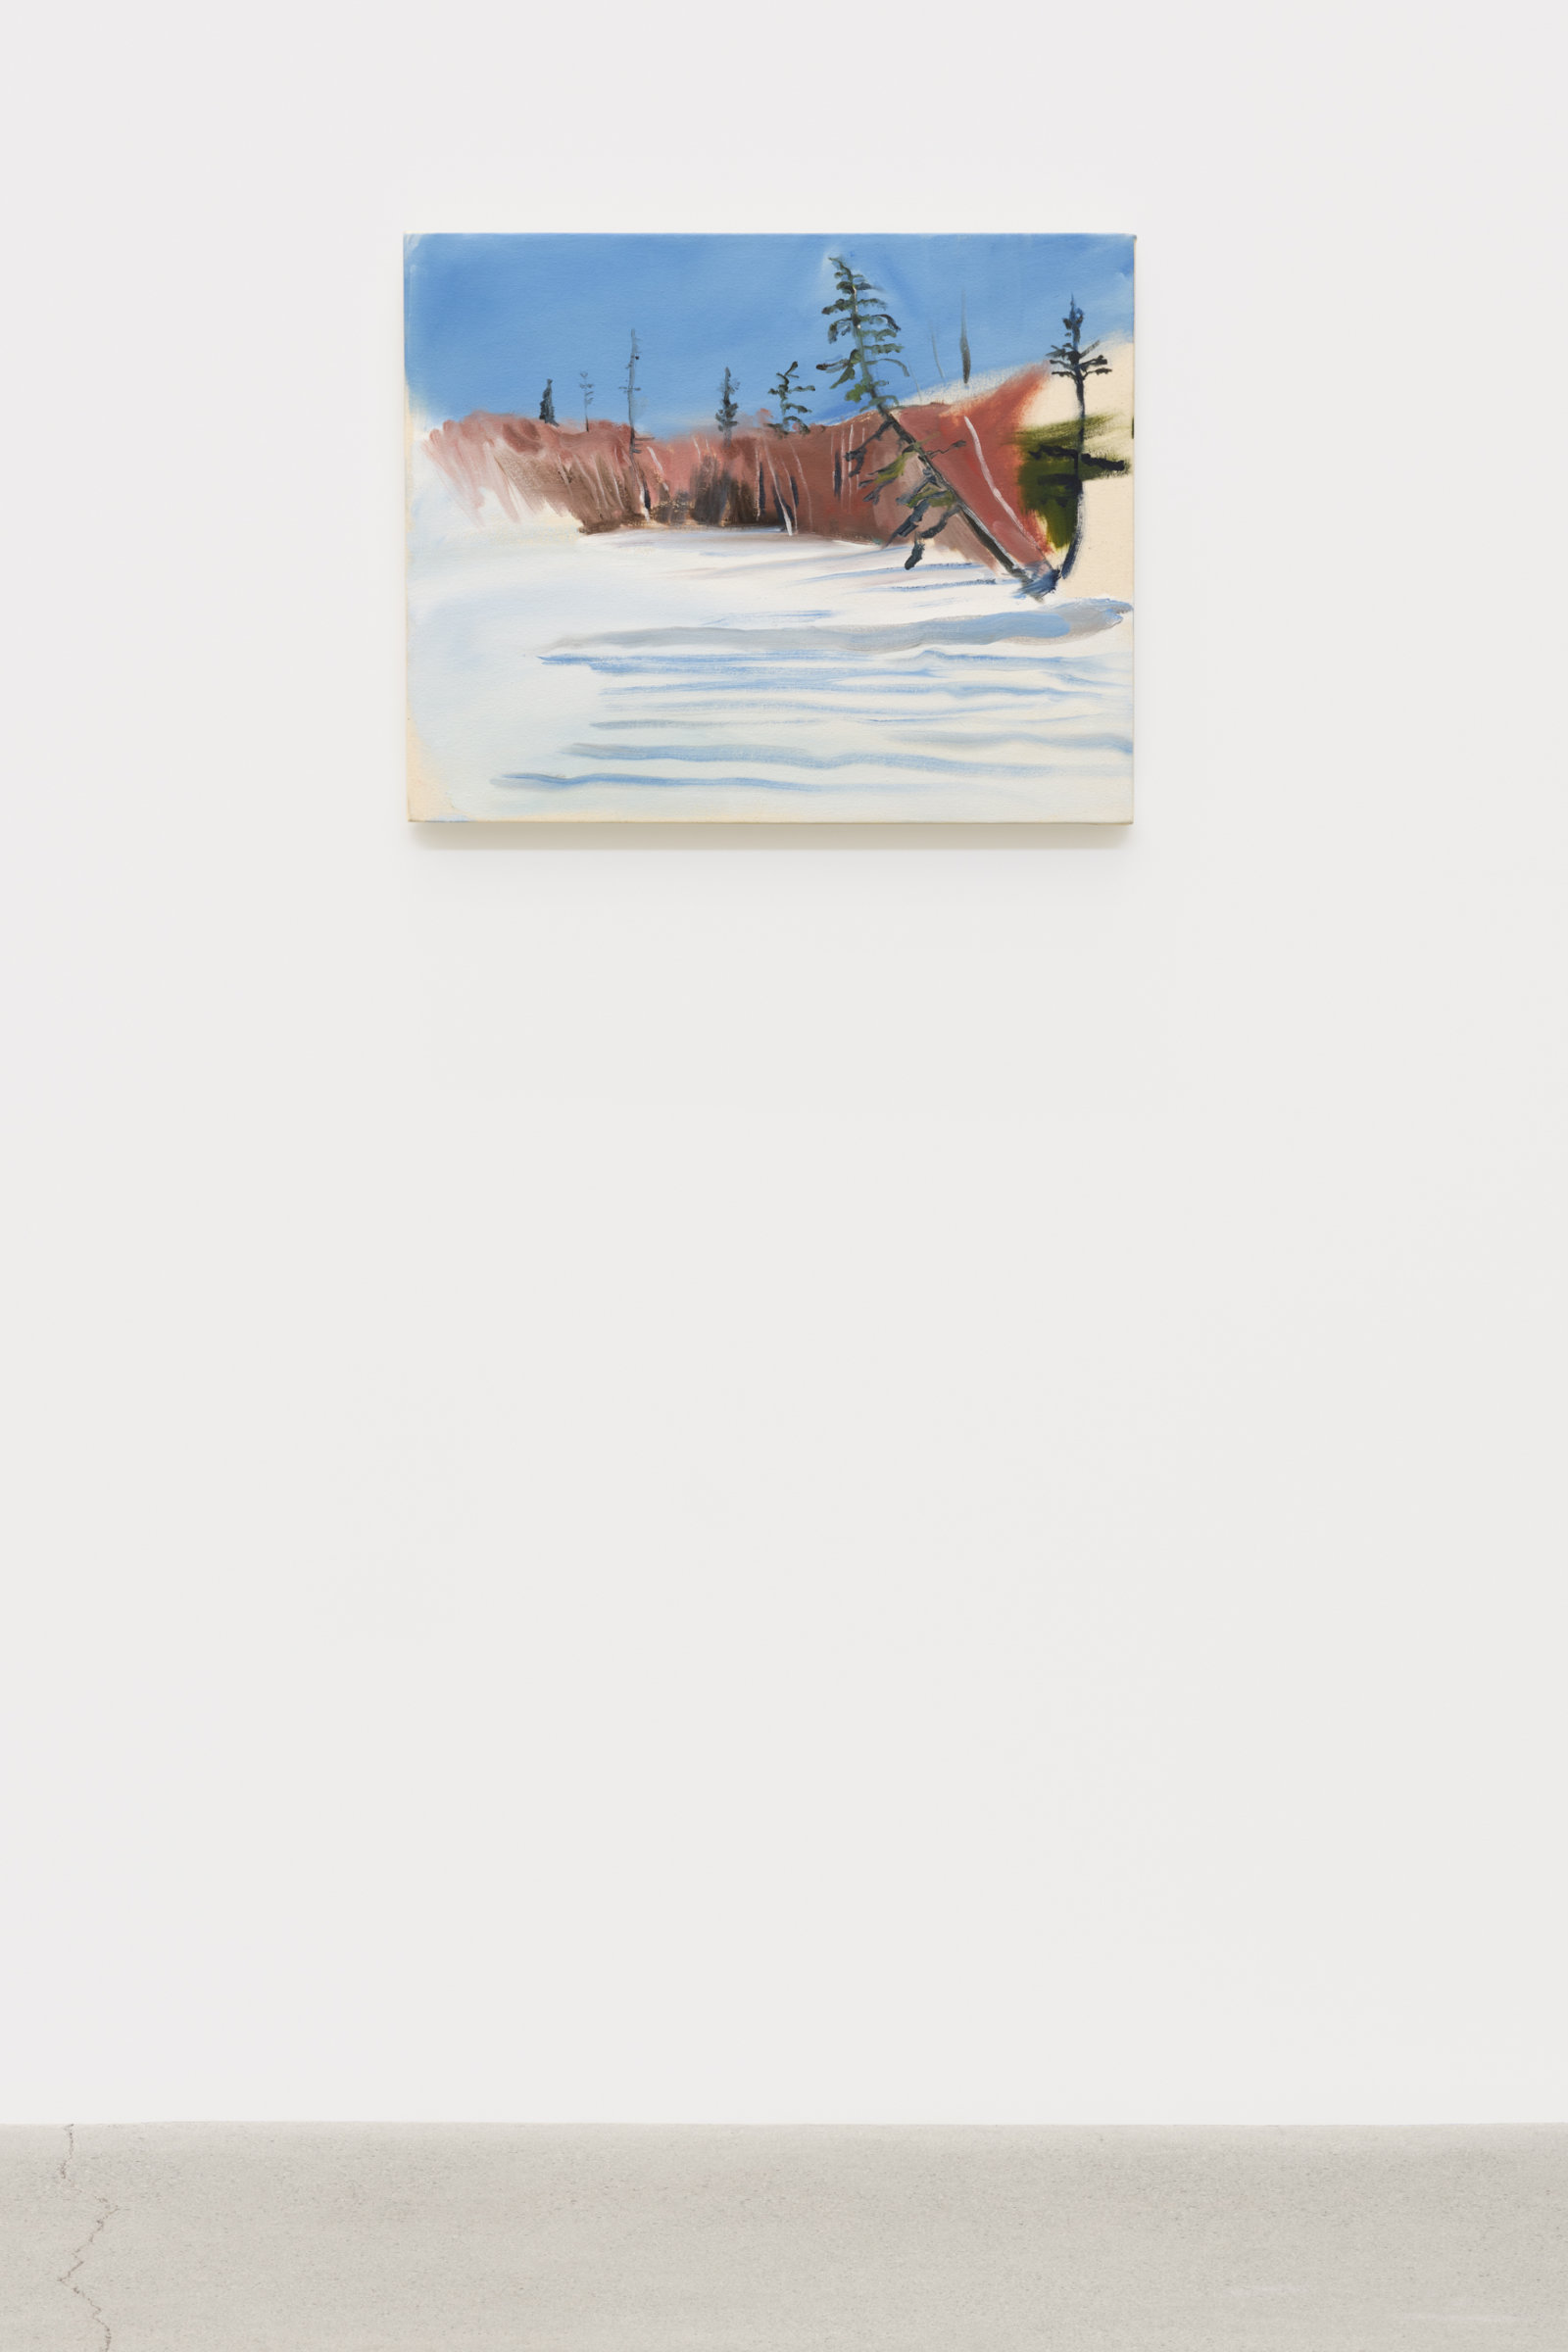 Brenda Draney, Lake, 2012, oil on canvas, 20 x 25 in. (51 x 64 cm)